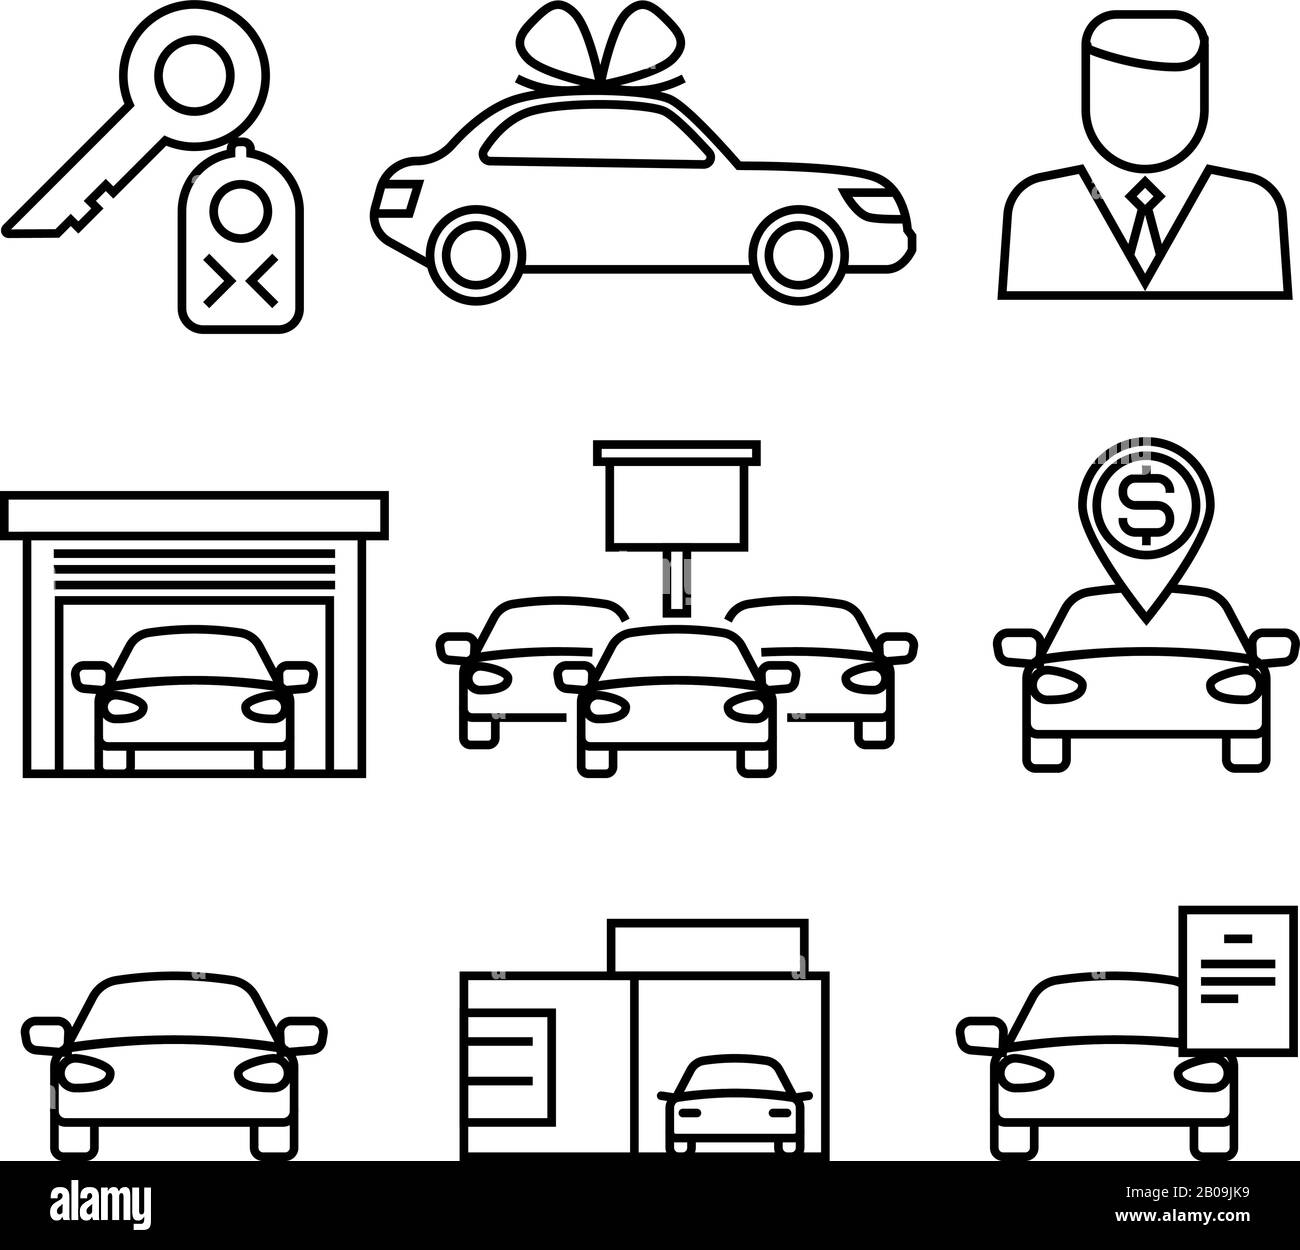 Autohäuser, Kauf und Verkauf von Pkws Linienvektor-Icons für den Automobilhandel, Händlerautoverkauf Illustration Stock Vektor